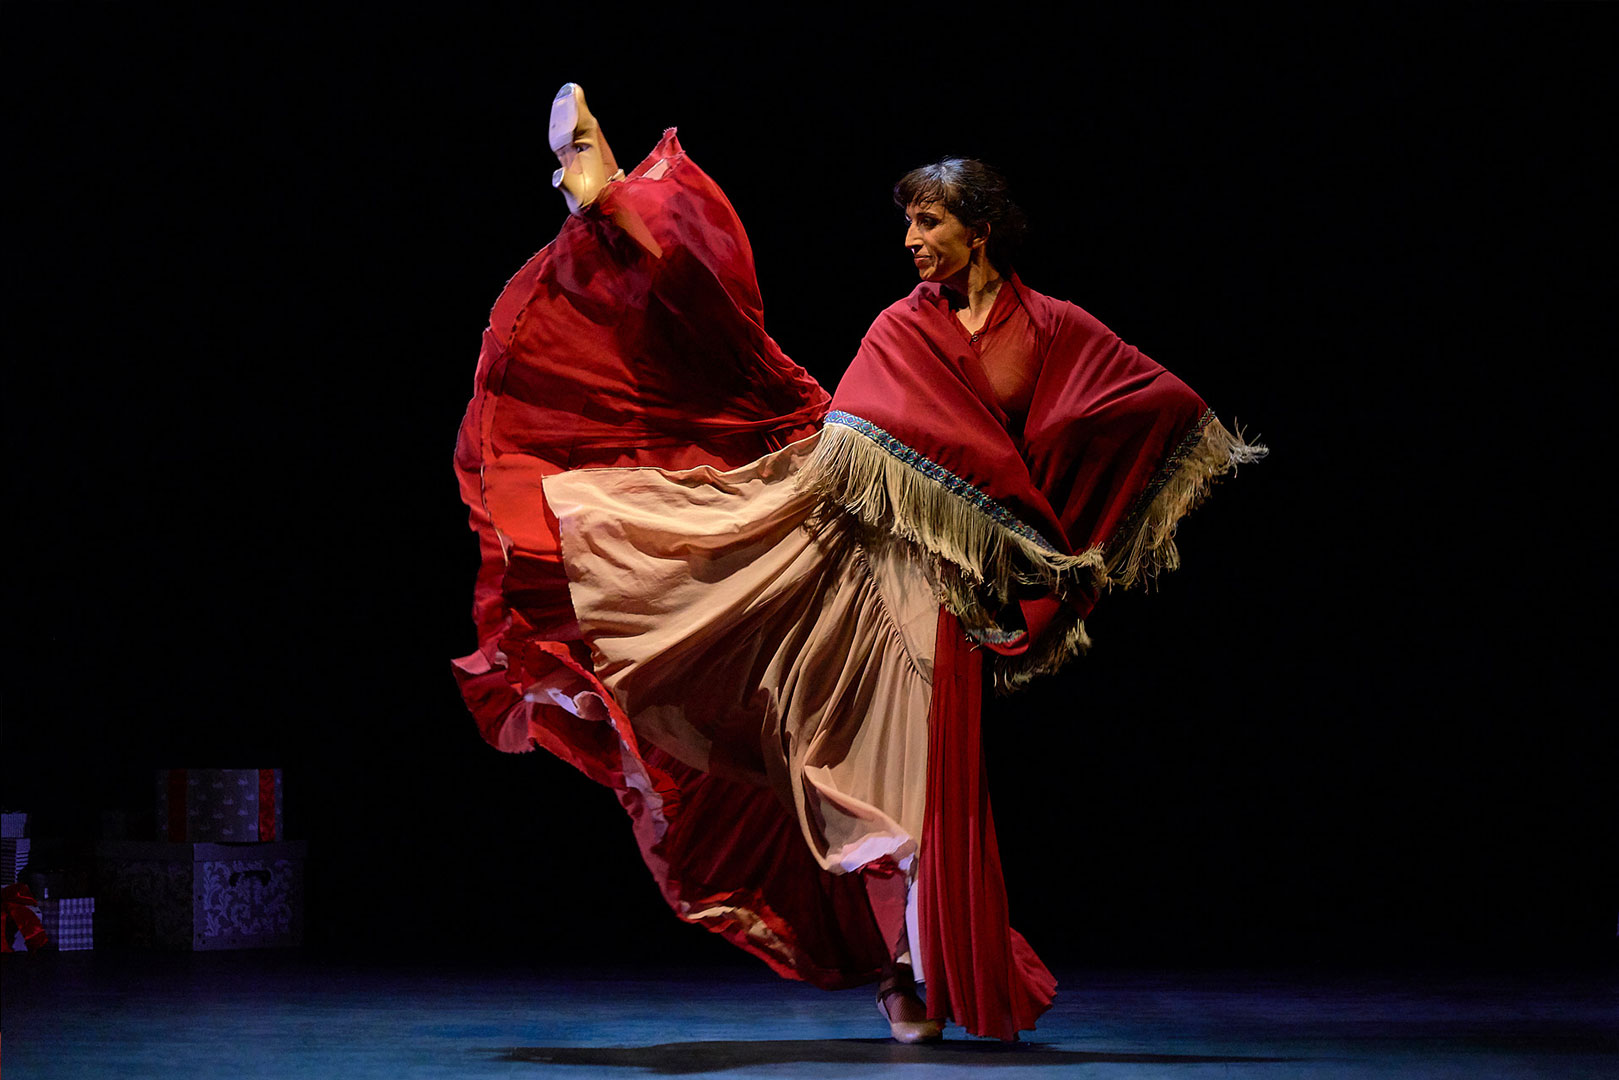 V Ciclo de Danza Espanola en los Auditorios de Murcia